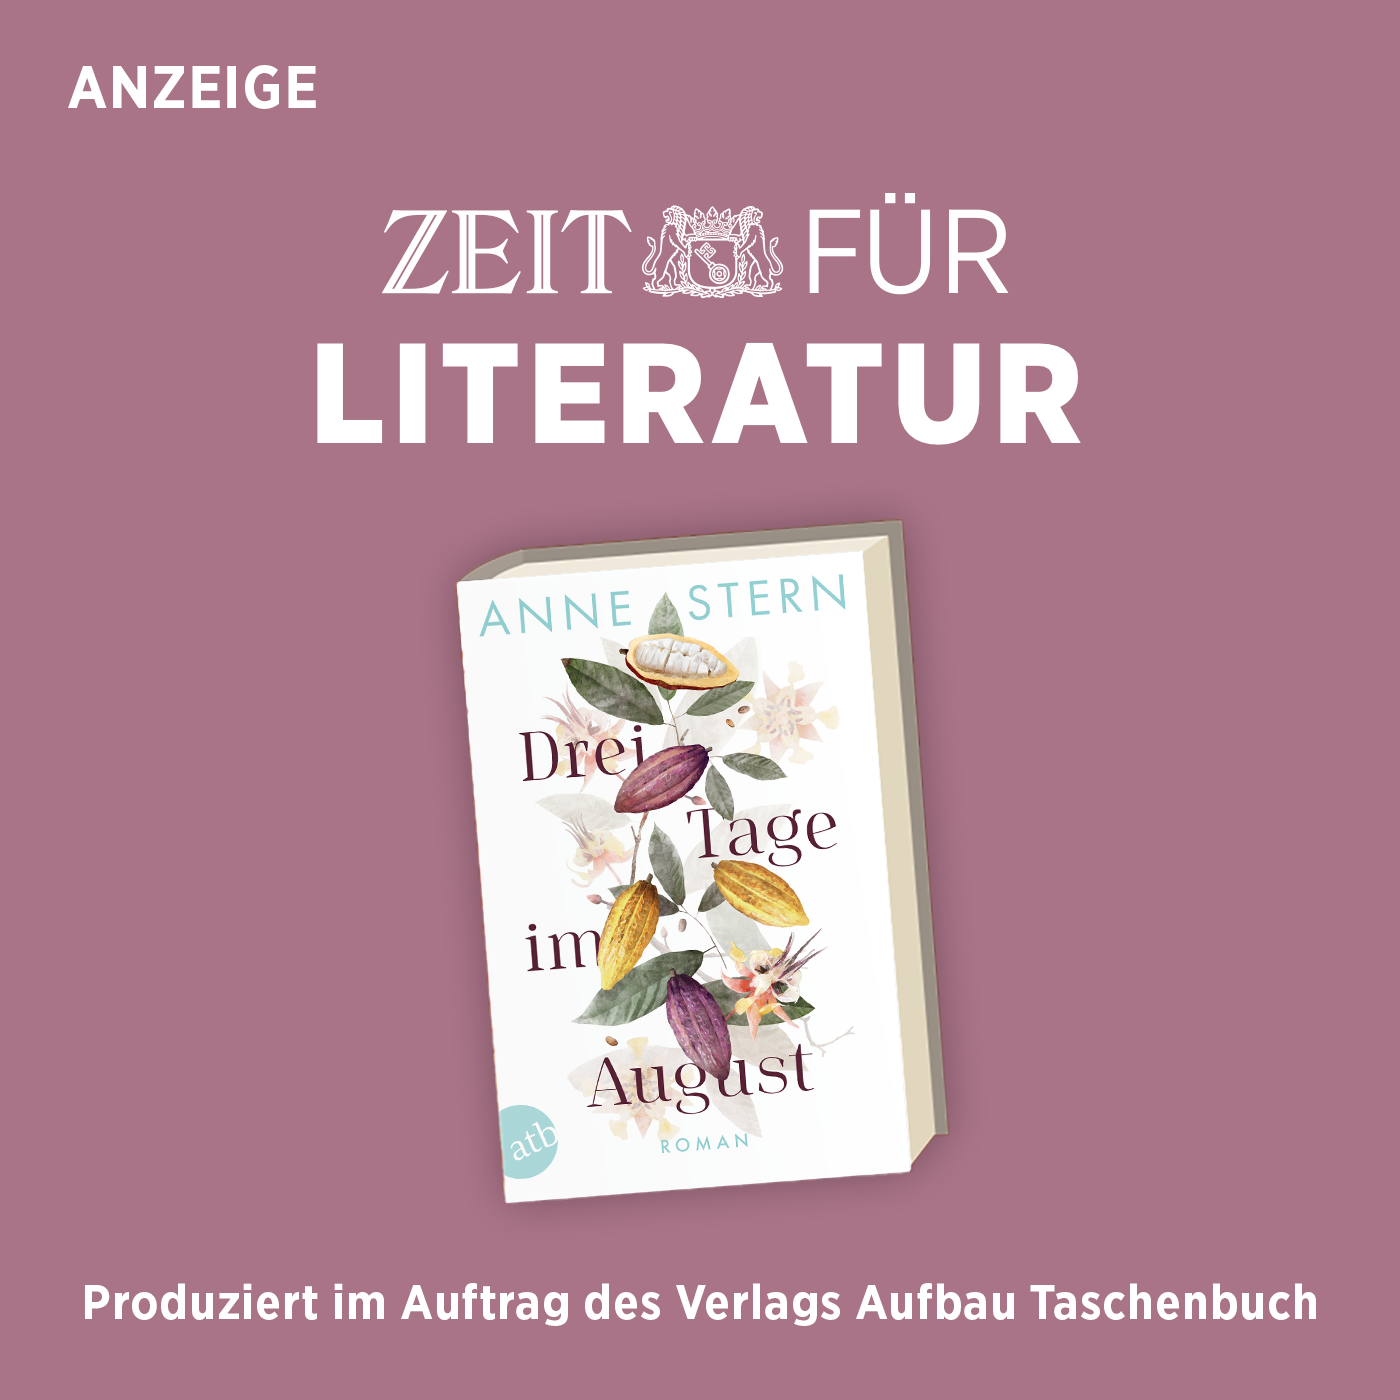 ZEIT für Literatur mit Anne Stern